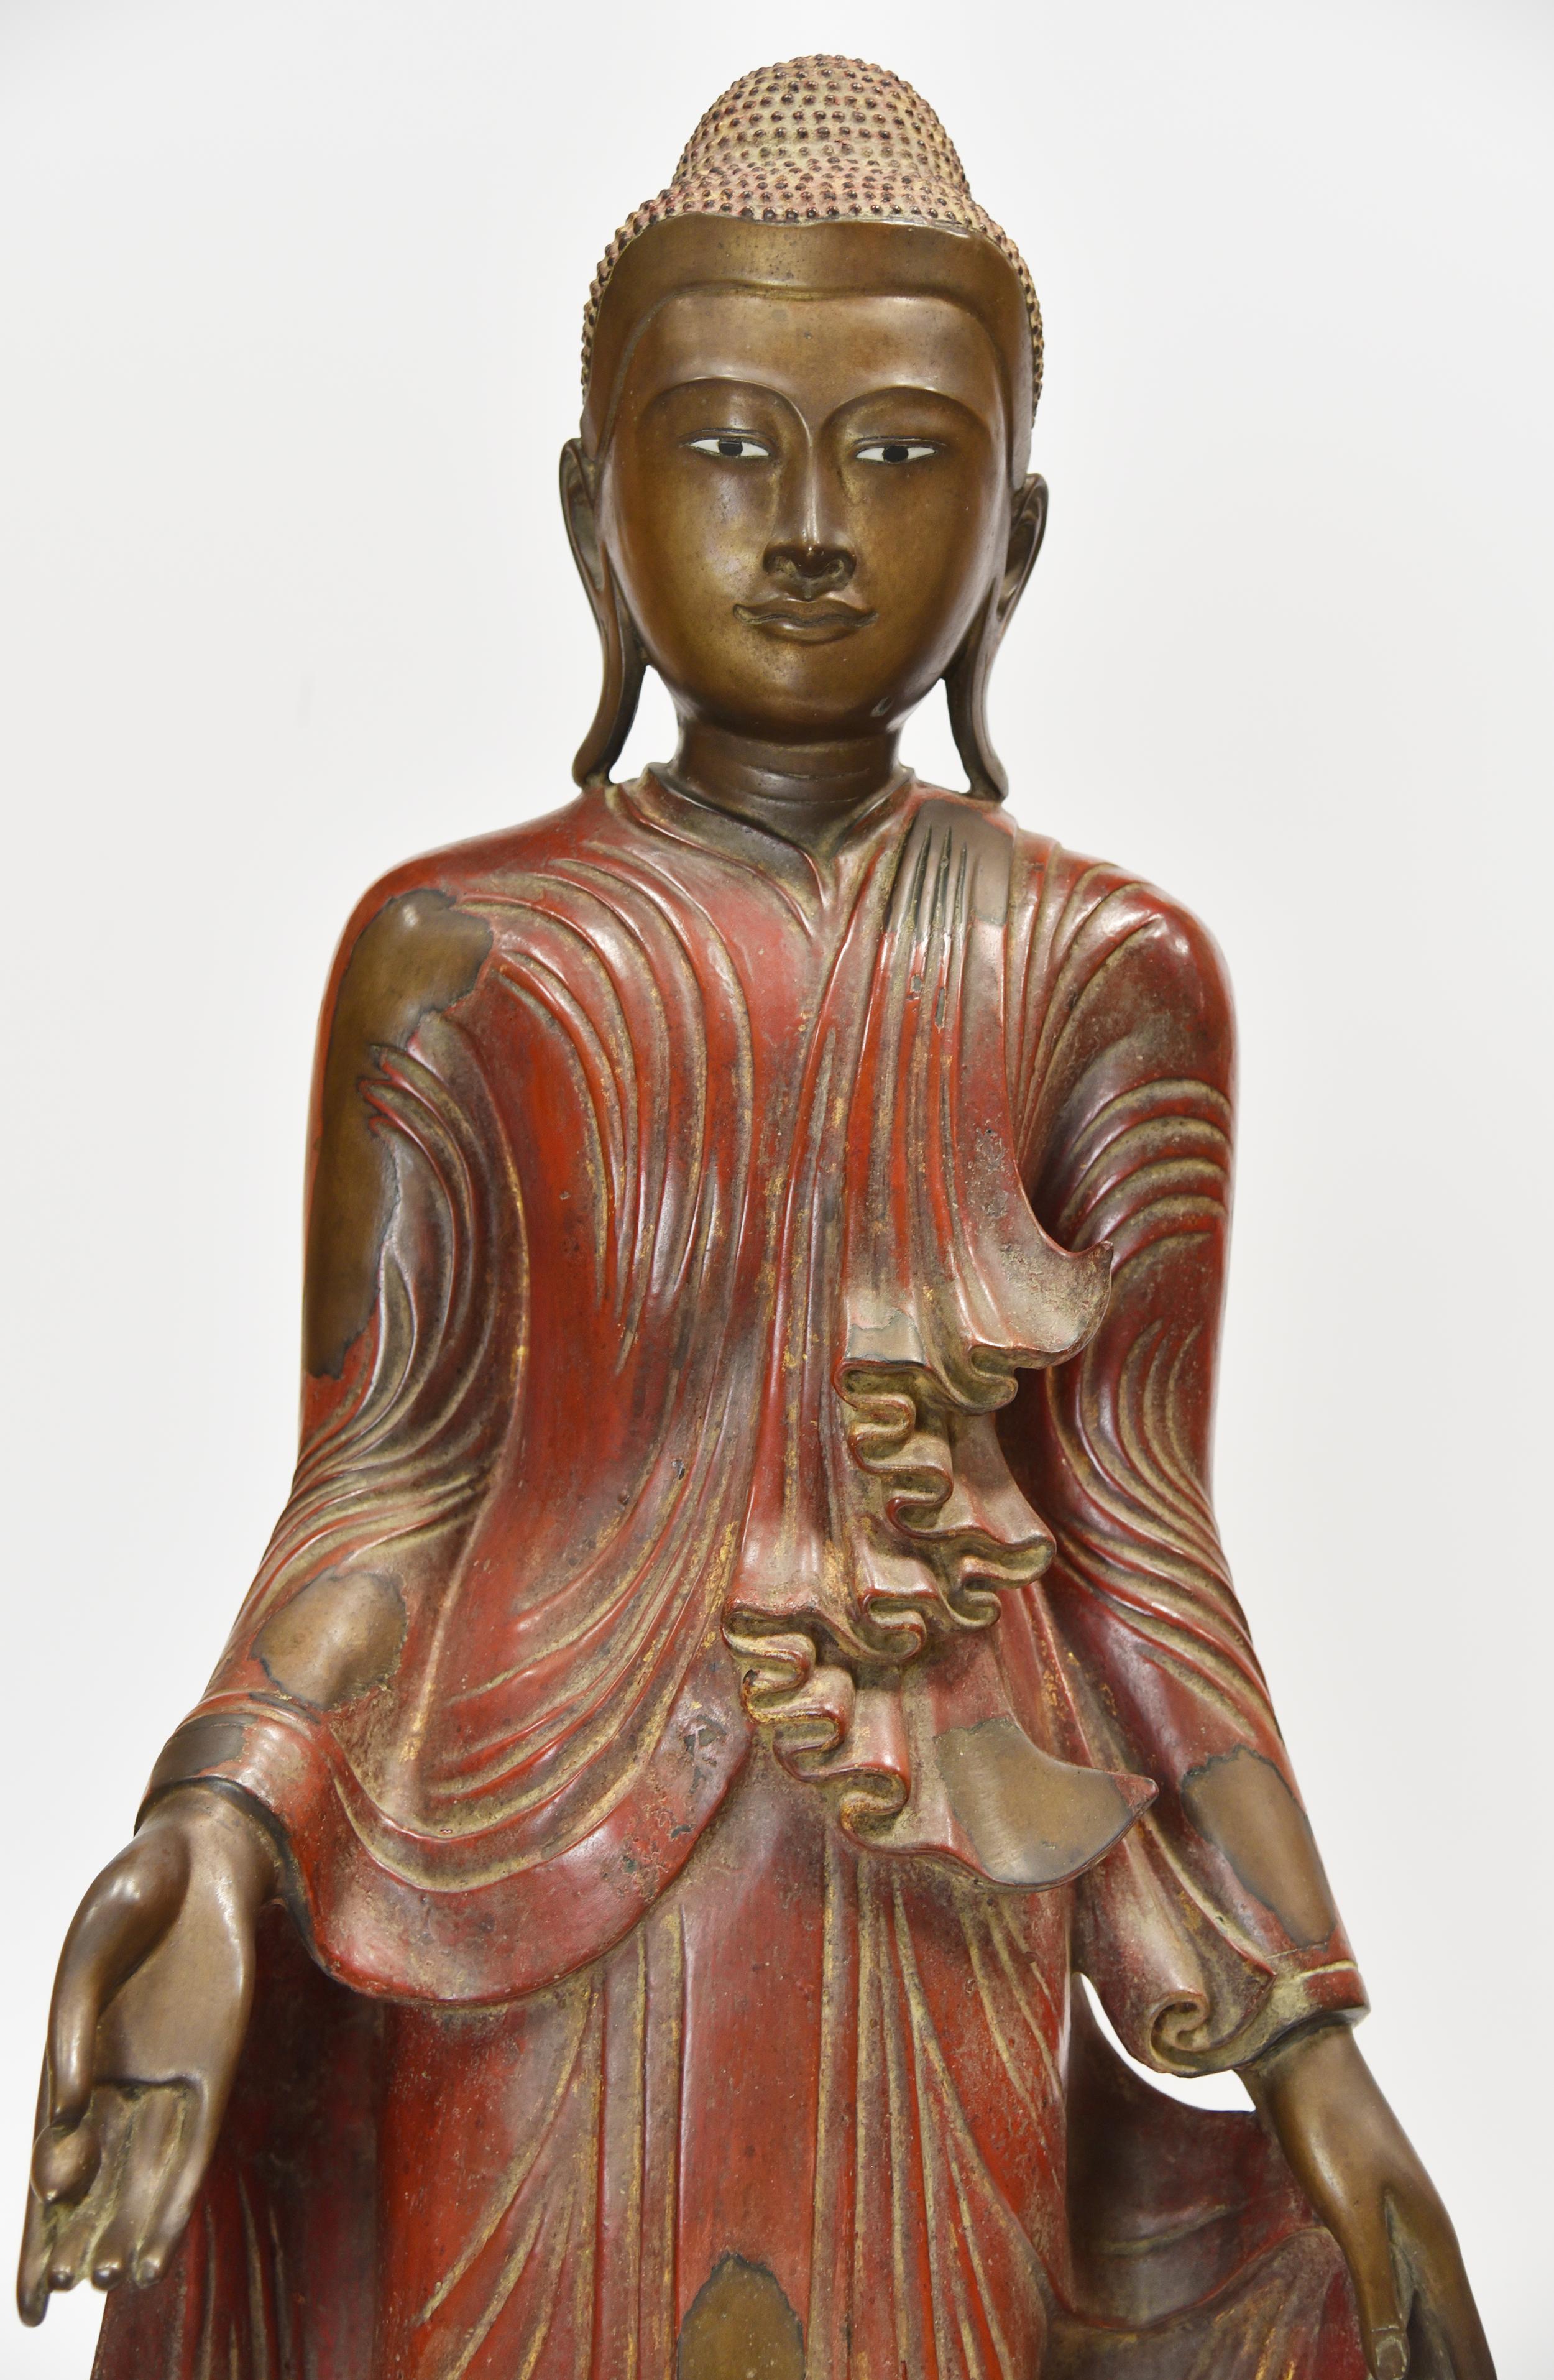 Bouddha en bronze coulé, en deux parties, avec une base ornée de bijoux et incrustée de dorures. La peinture originale en laque rouge de cette figurine et le design de la robe complète sont visibles sur l'ensemble de cette figurine. Magnifique